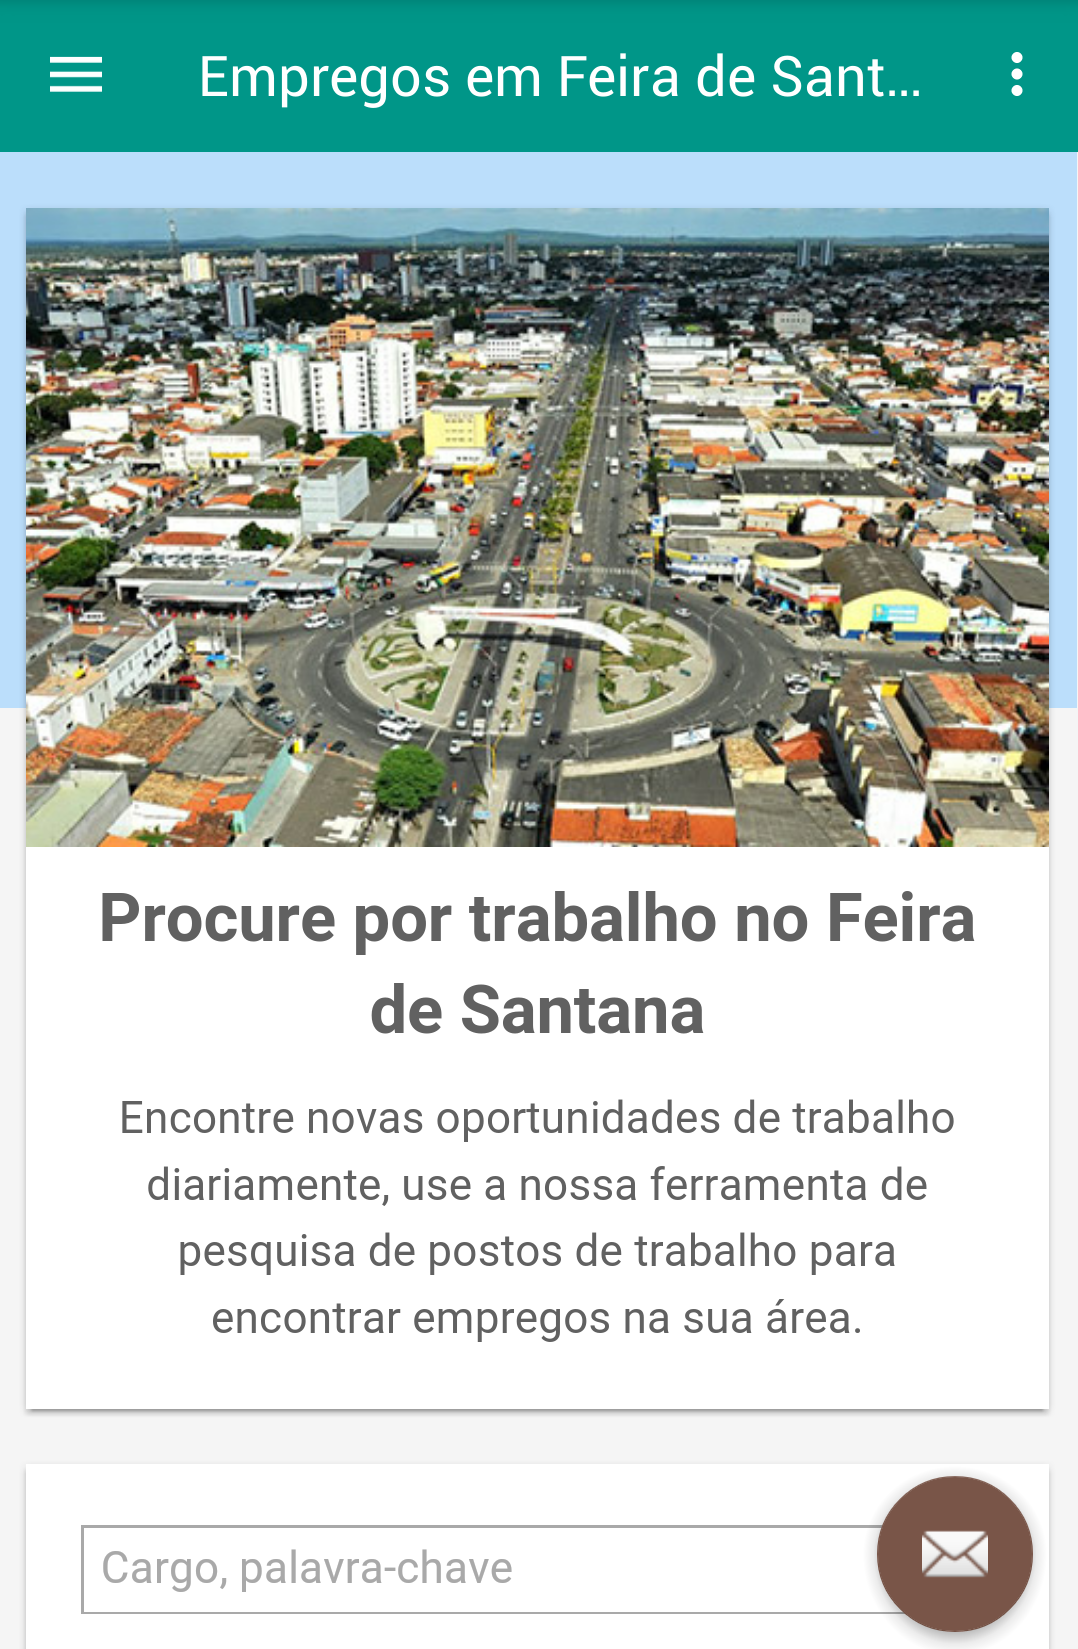 Android application Empregos em Feira de Santana screenshort